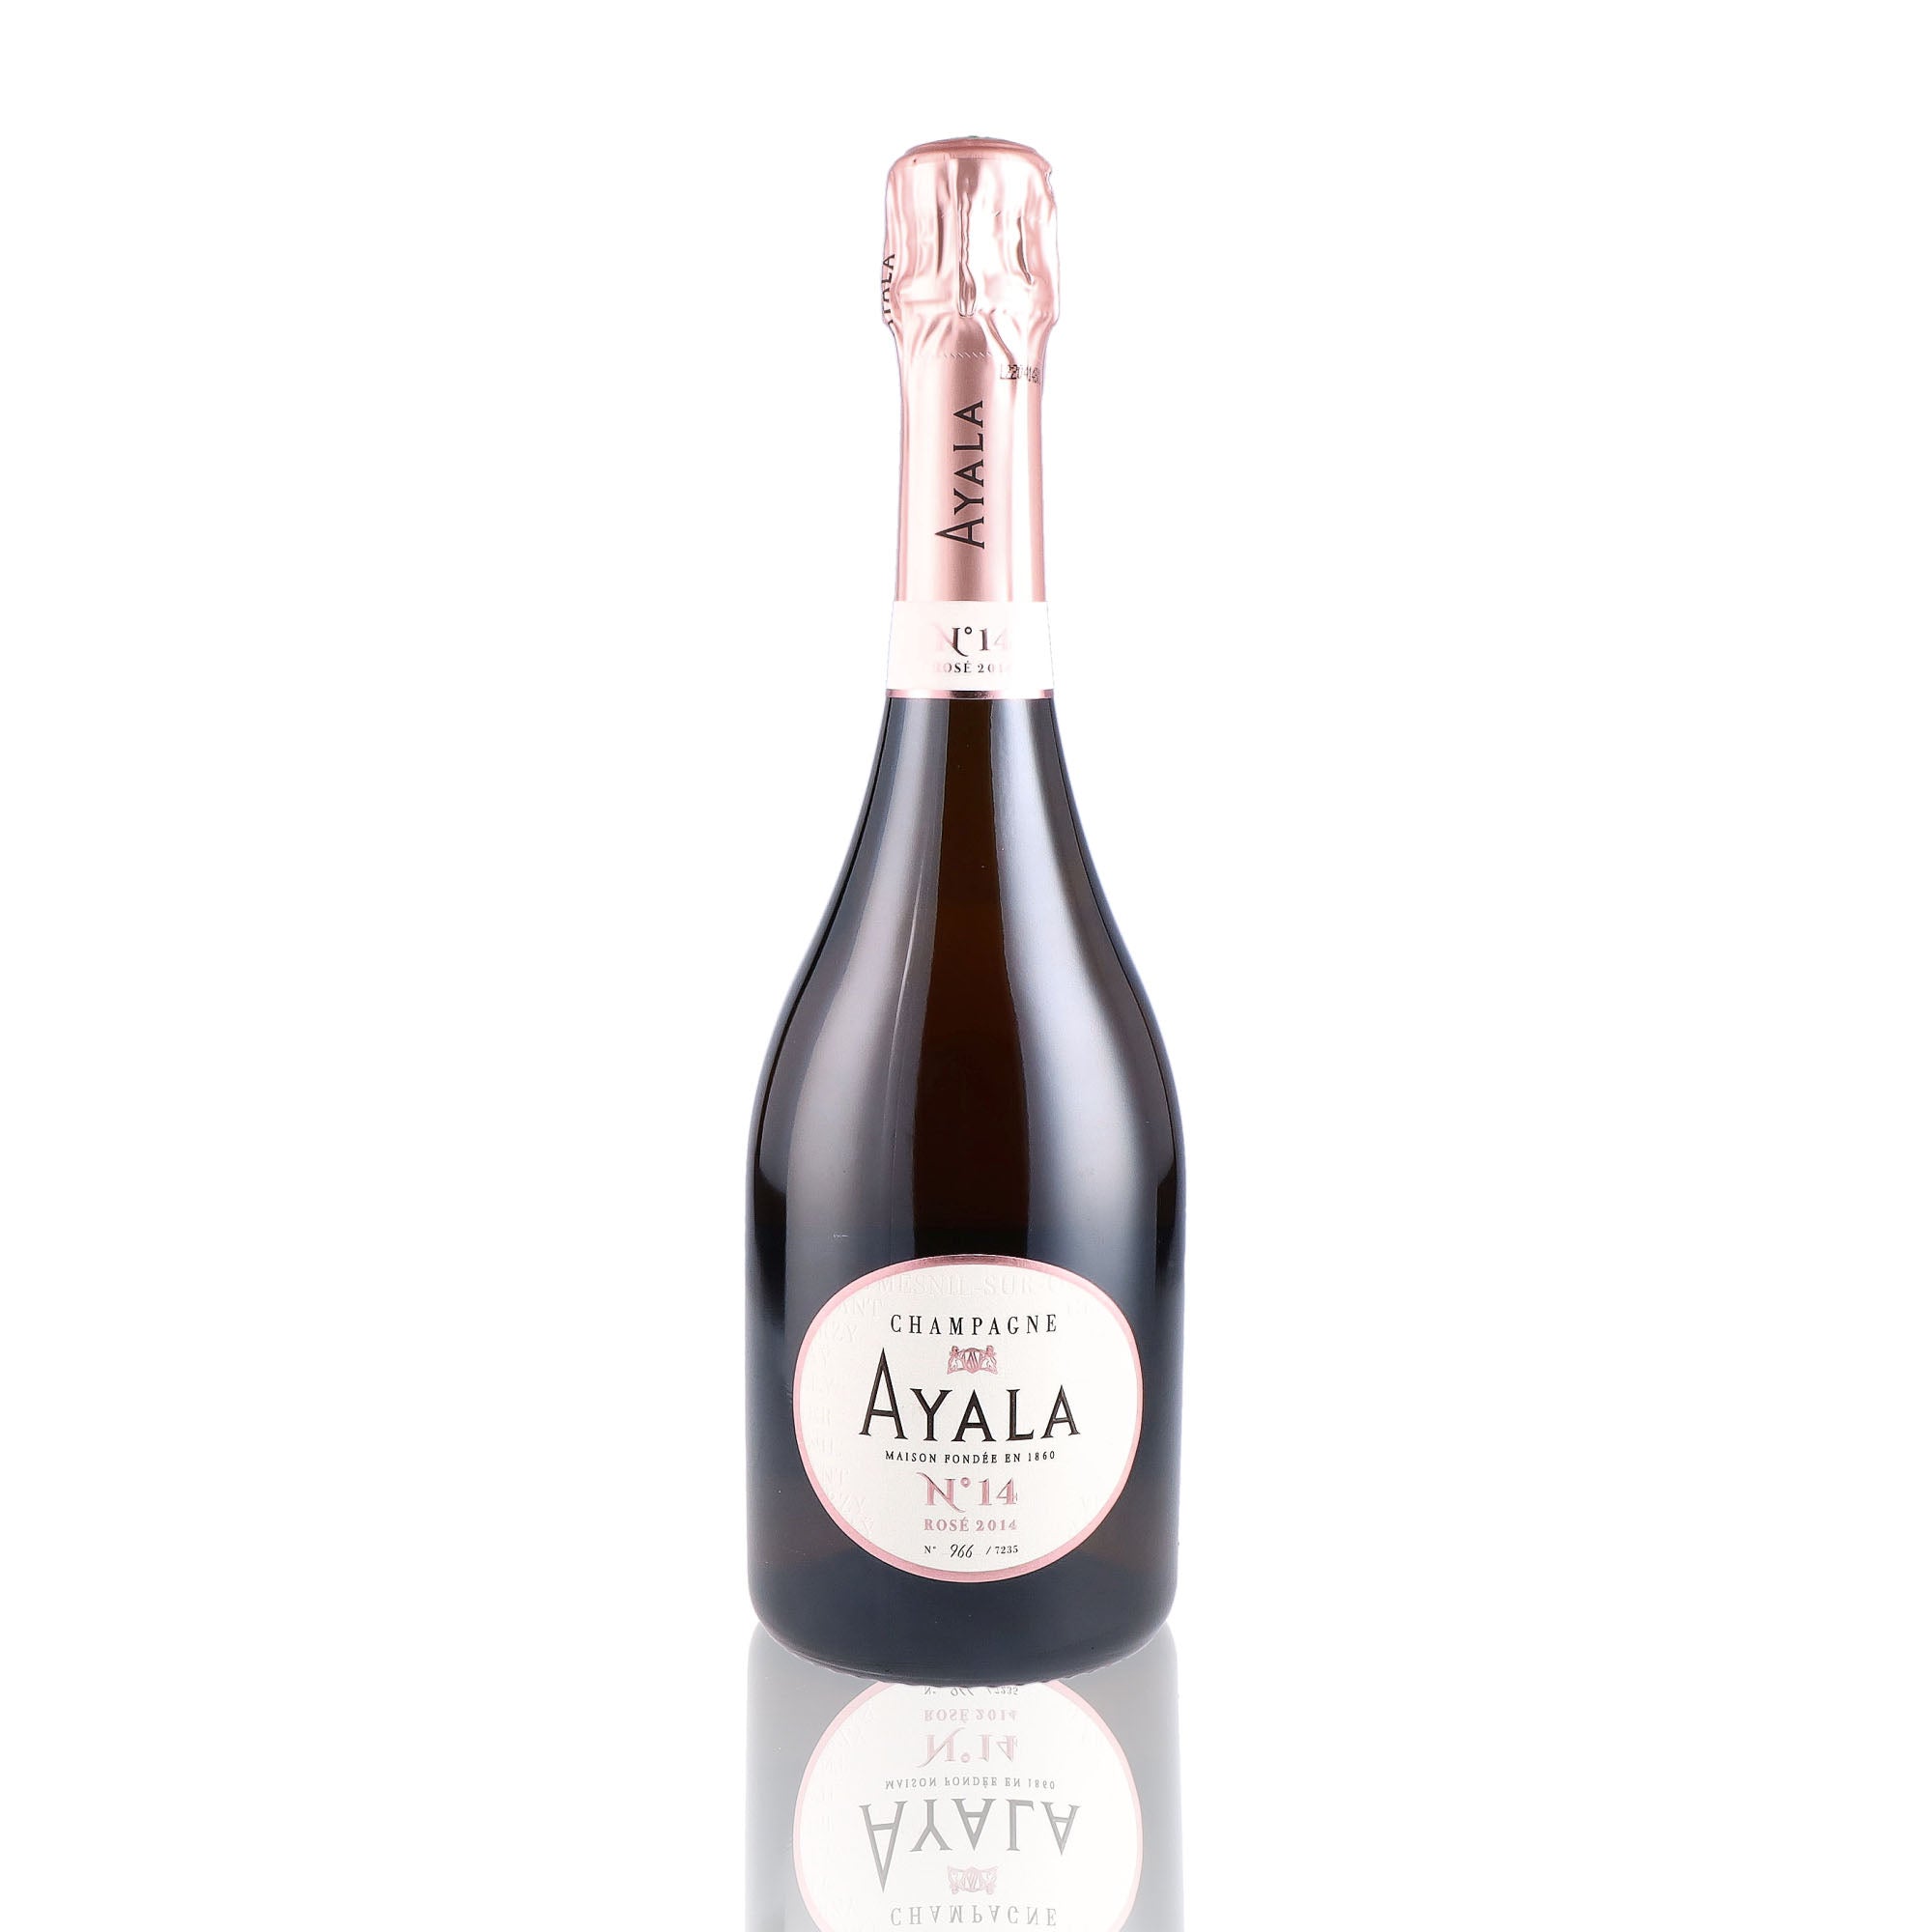 Une bouteille de champagne de la marque Ayala, de type rosé, nommée cuvée N°14.